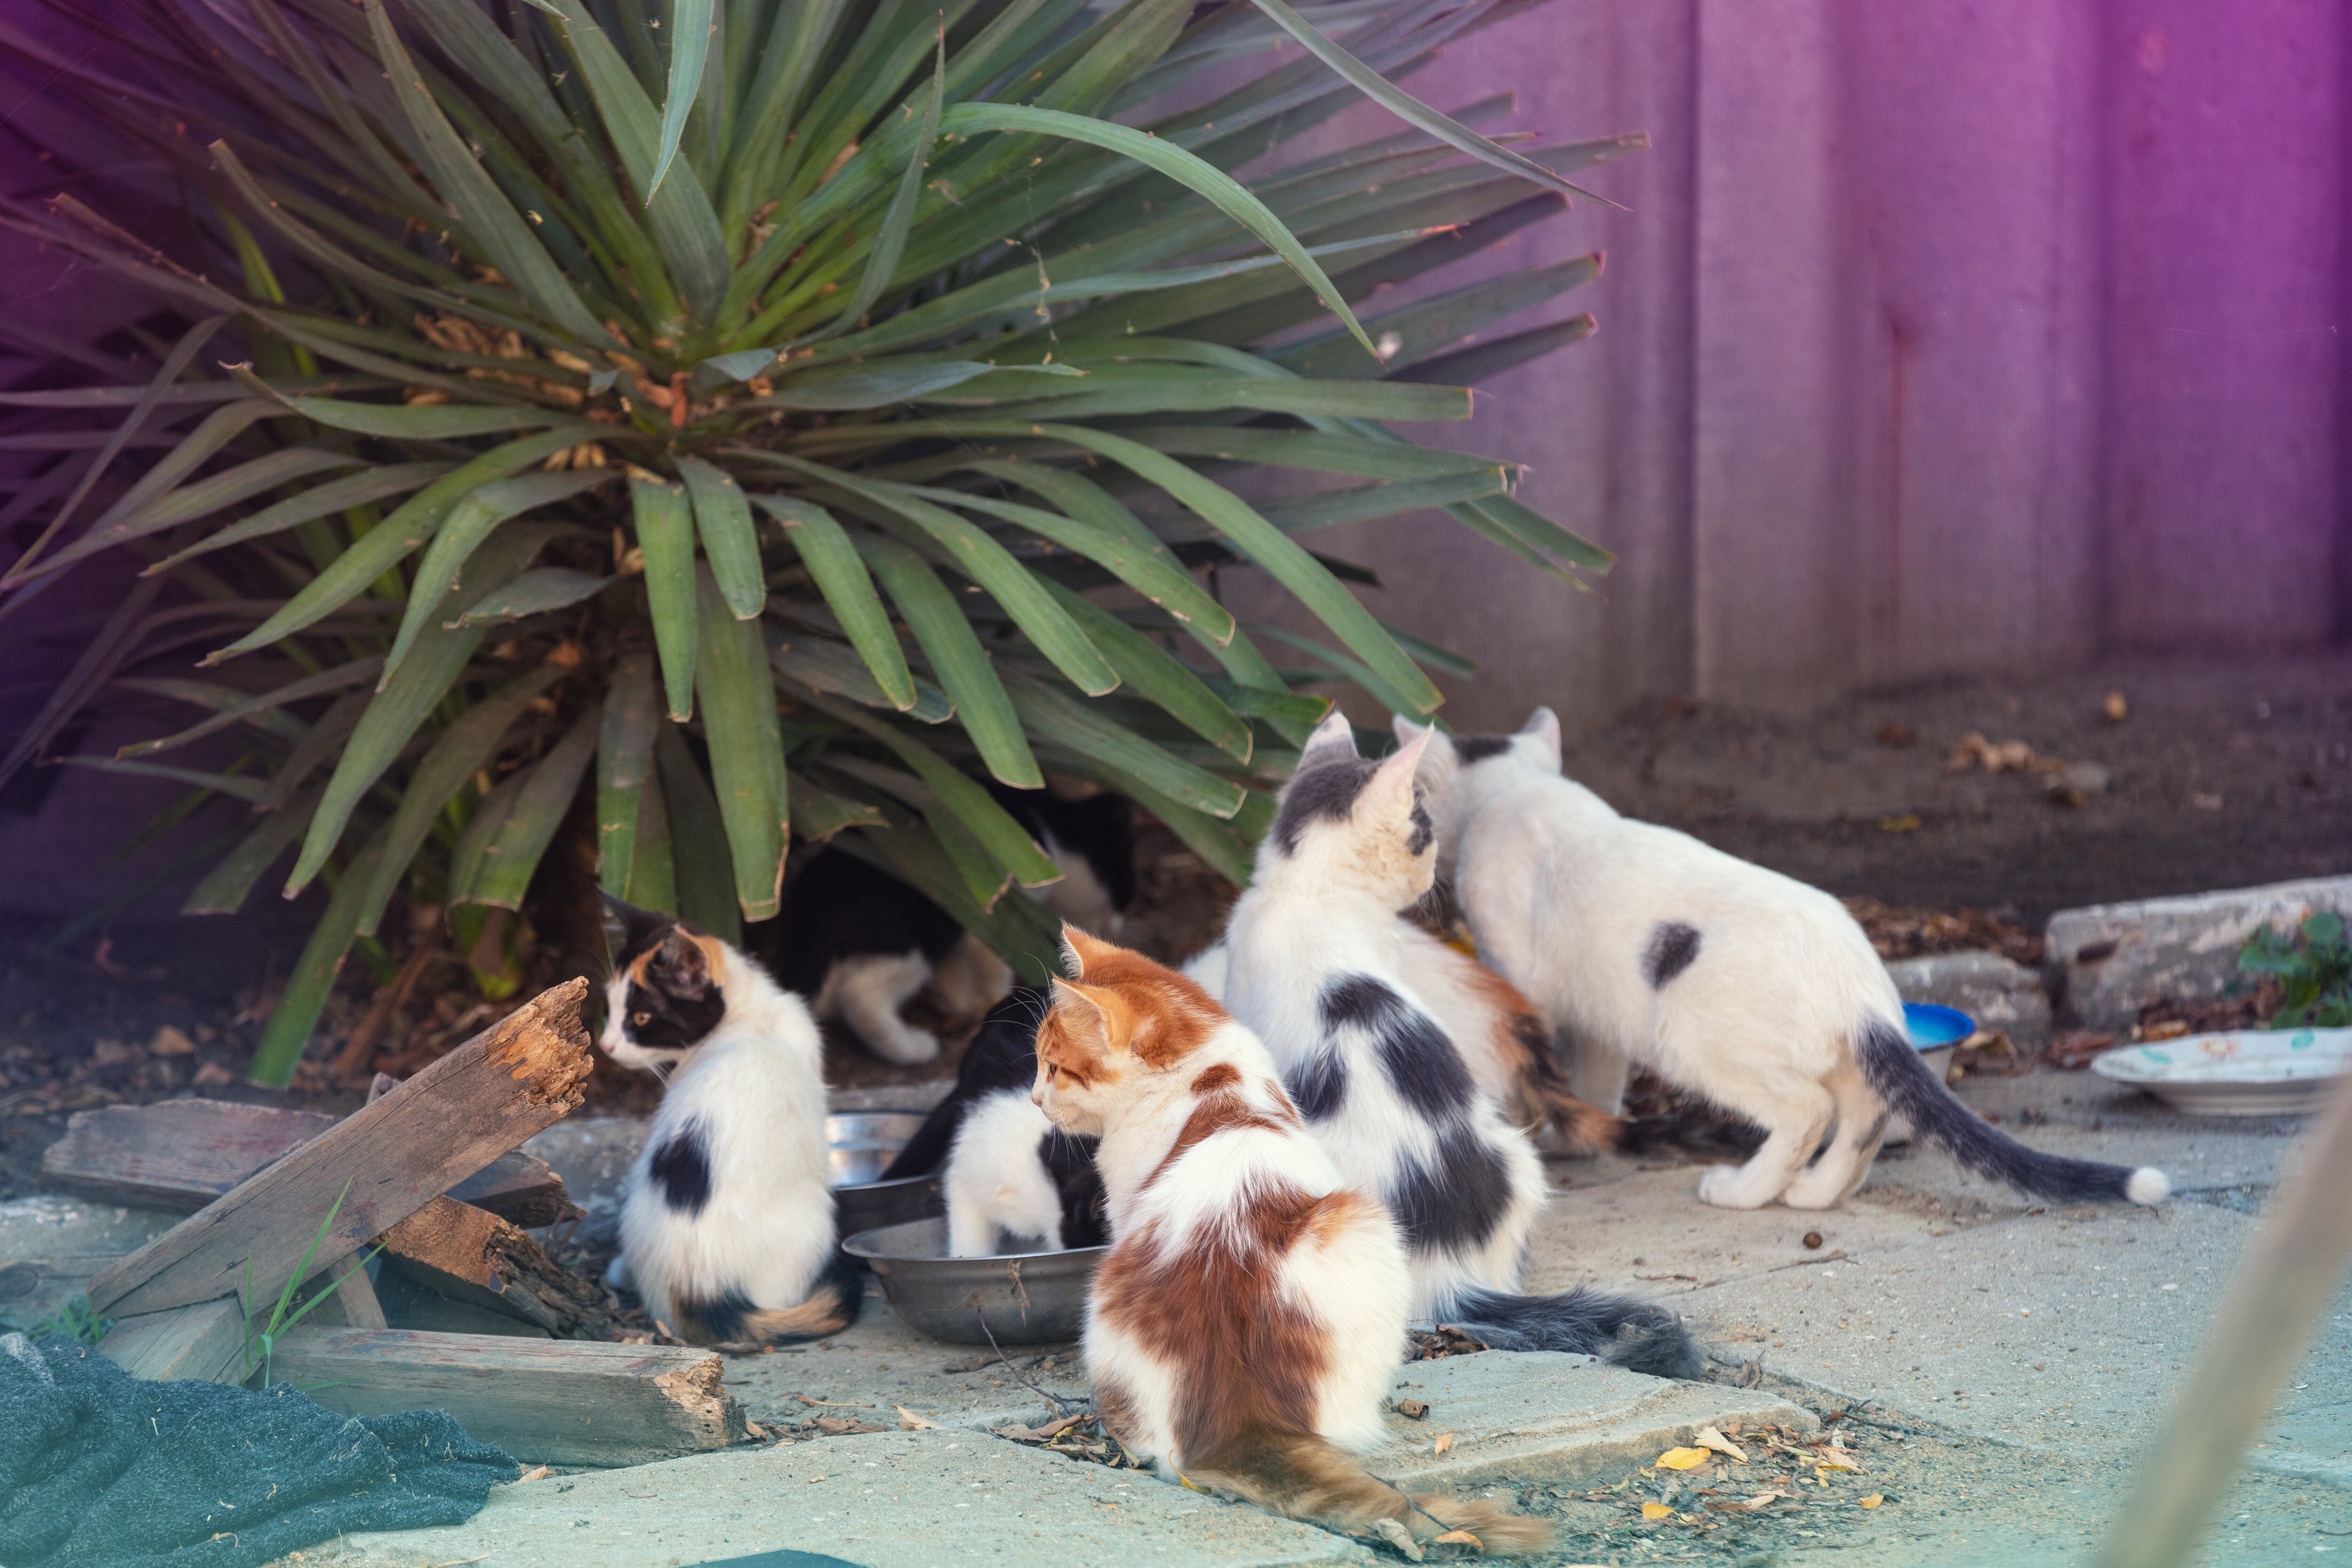 Una colonia está formada por varios gatos que viven en libertad